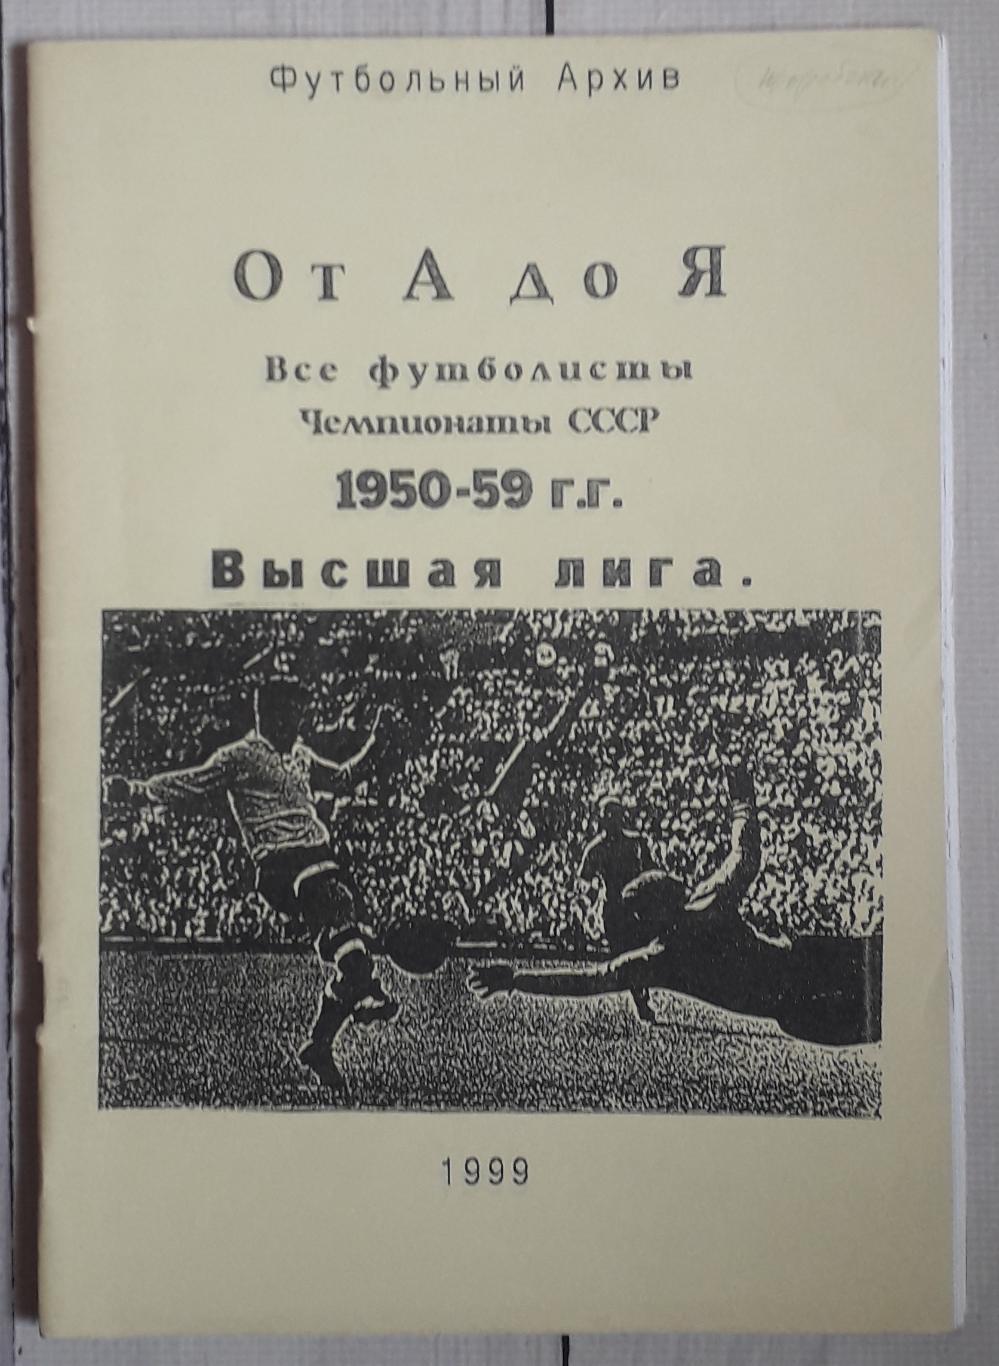 Все футболисты. Чемпионаты СССР 1950-59. Высшая лига. Часть І